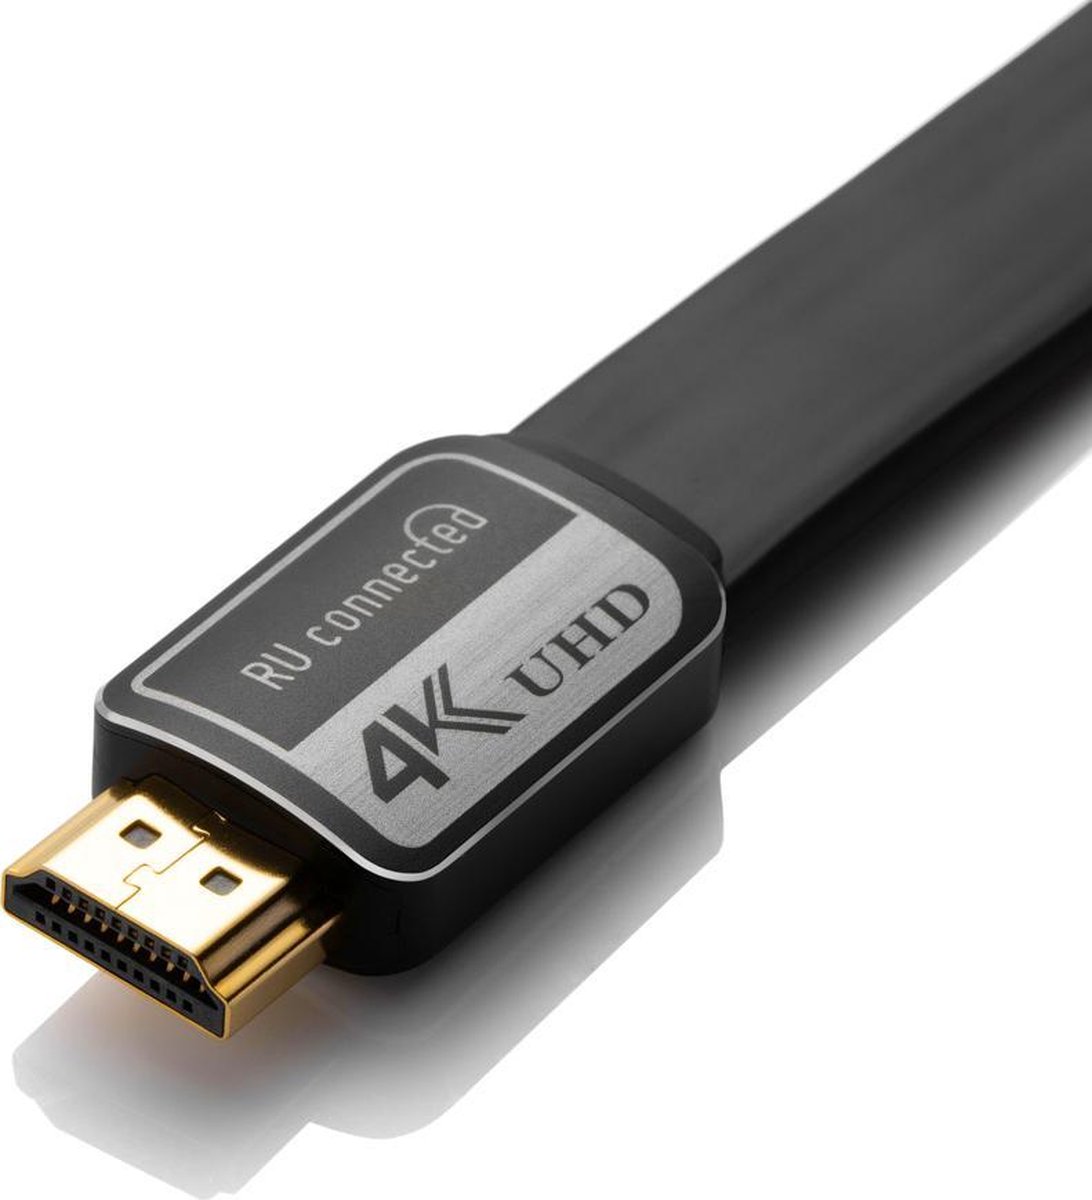 Doe een poging uitvinding Leugen HDMI kabel 4K - 1 meter - Beste voor 4K met ARC, HDR, 4:4:4 bij 60 Hz |  bol.com